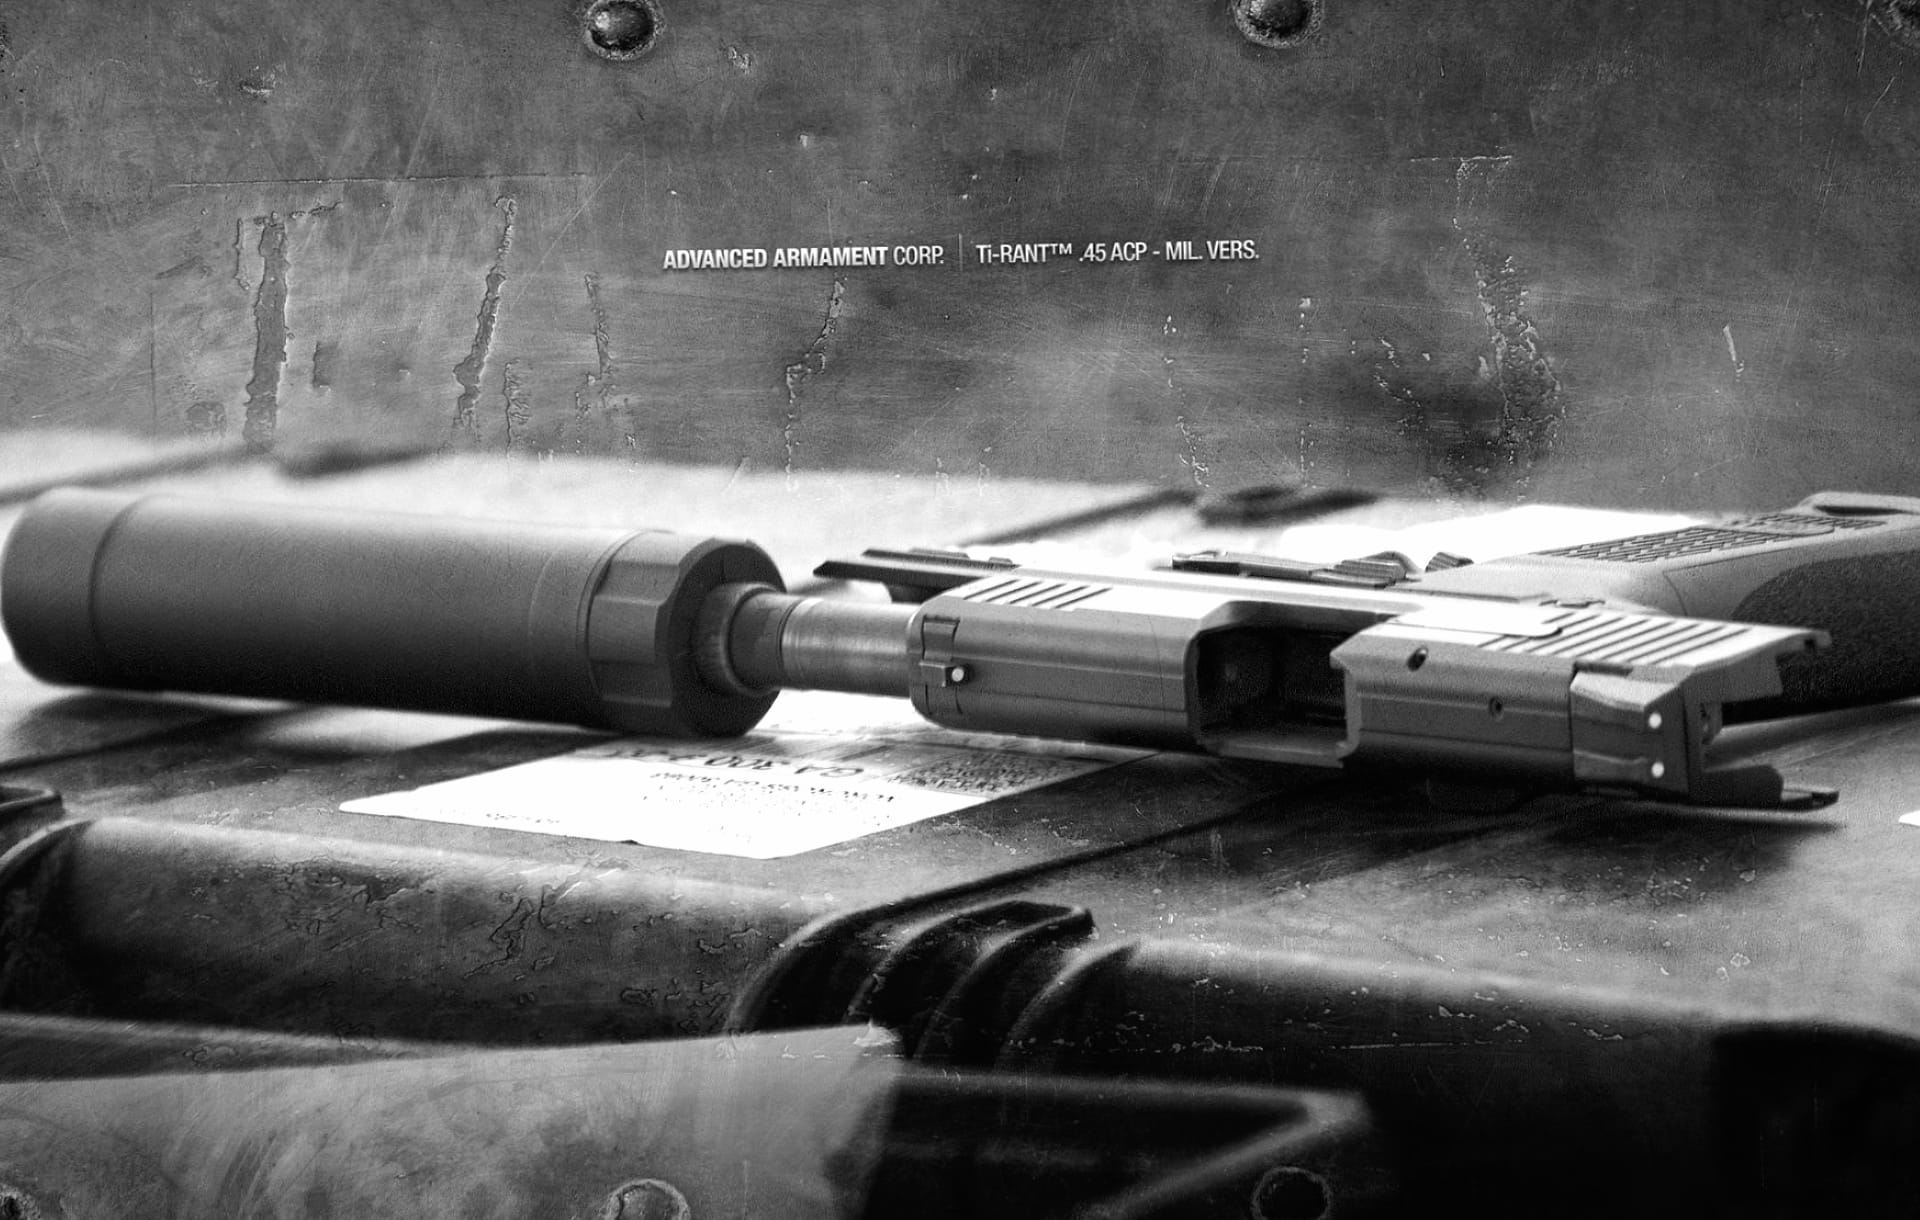 Advanced Armament Ti-Rant Pistol at 1024 x 1024 iPad size wallpapers HD quality